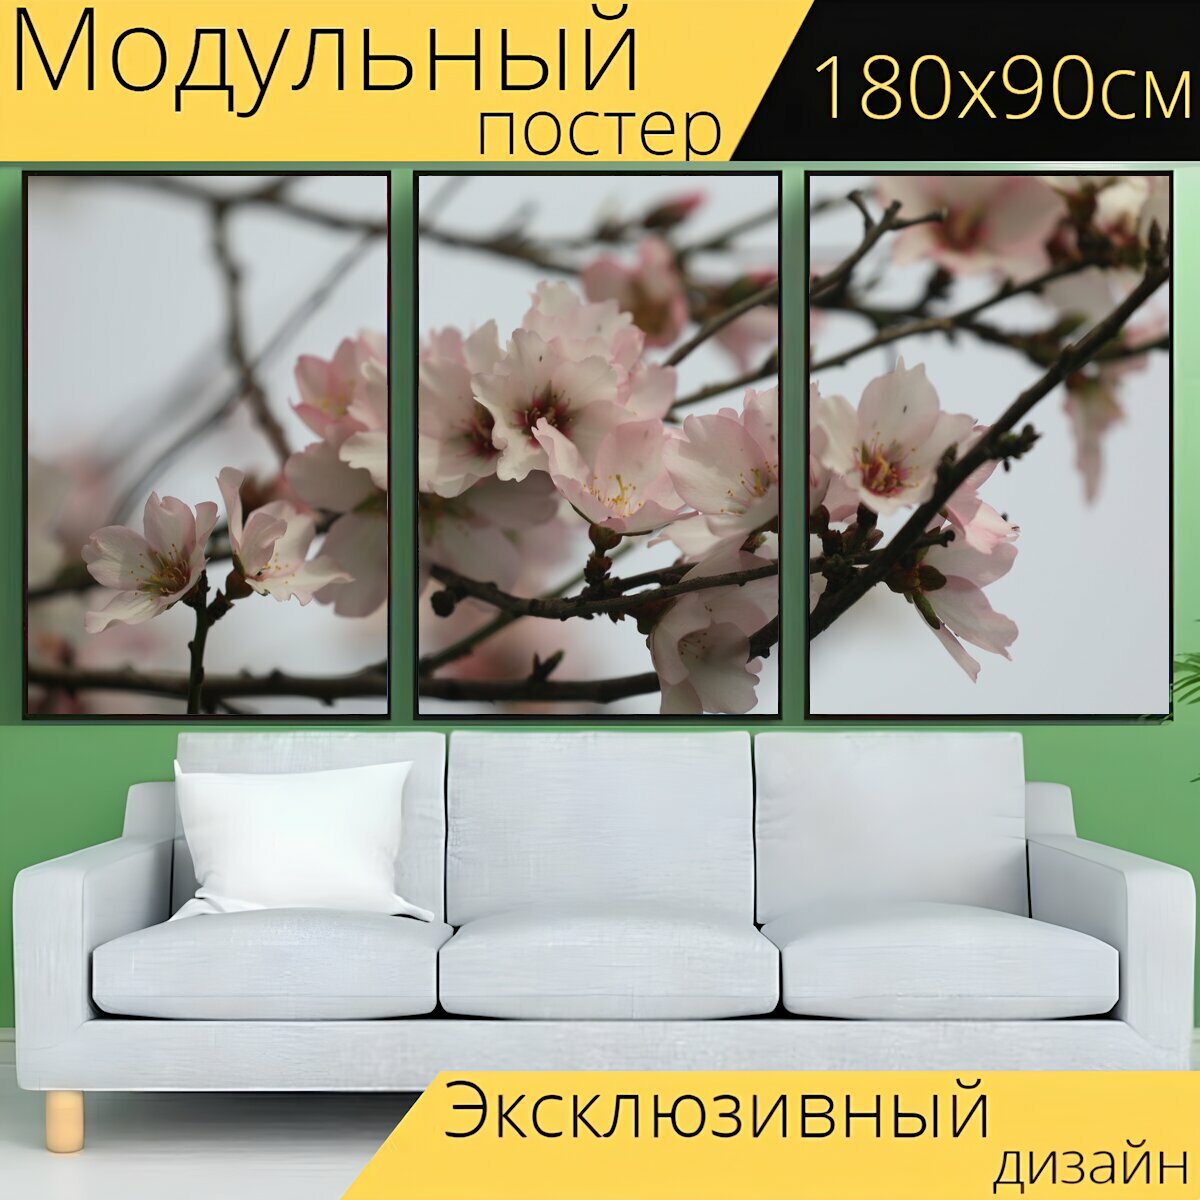 Модульный постер "Цветок, дерево, весна" 180 x 90 см. для интерьера